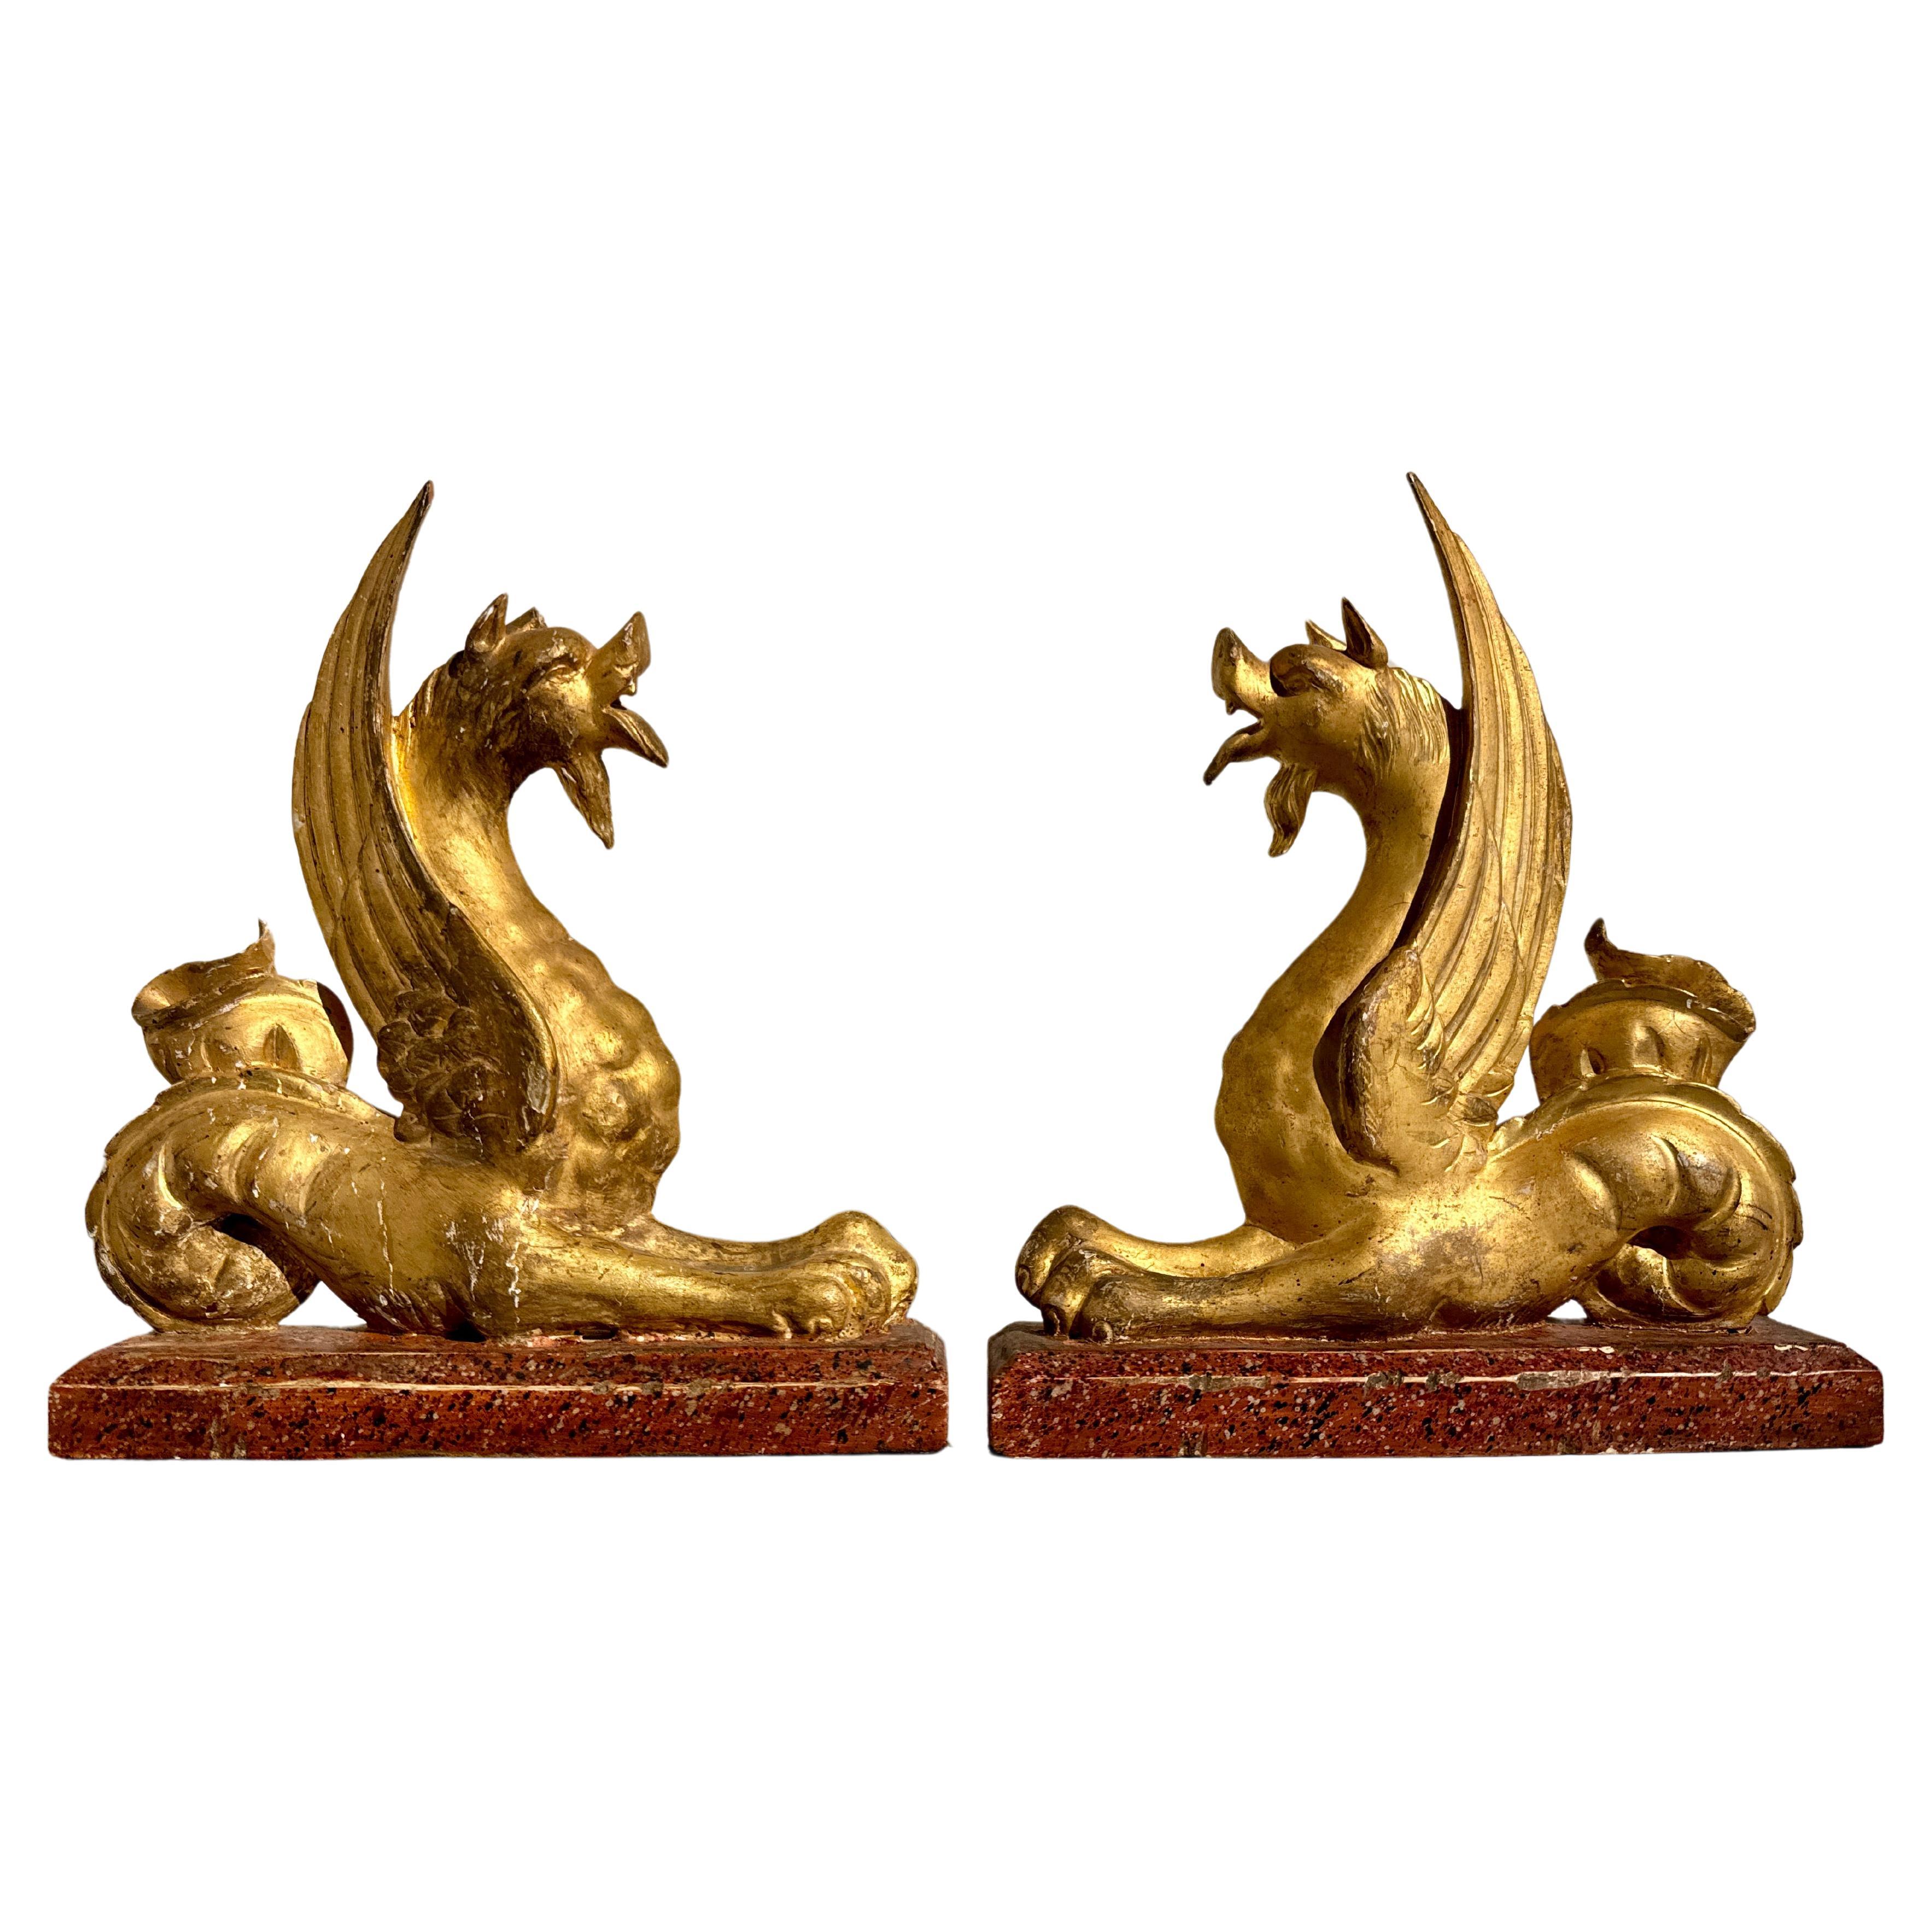 Paire de bêtes mythiques italiennes néoclassiques en bois craquelé et doré, milieu du XIXe siècle